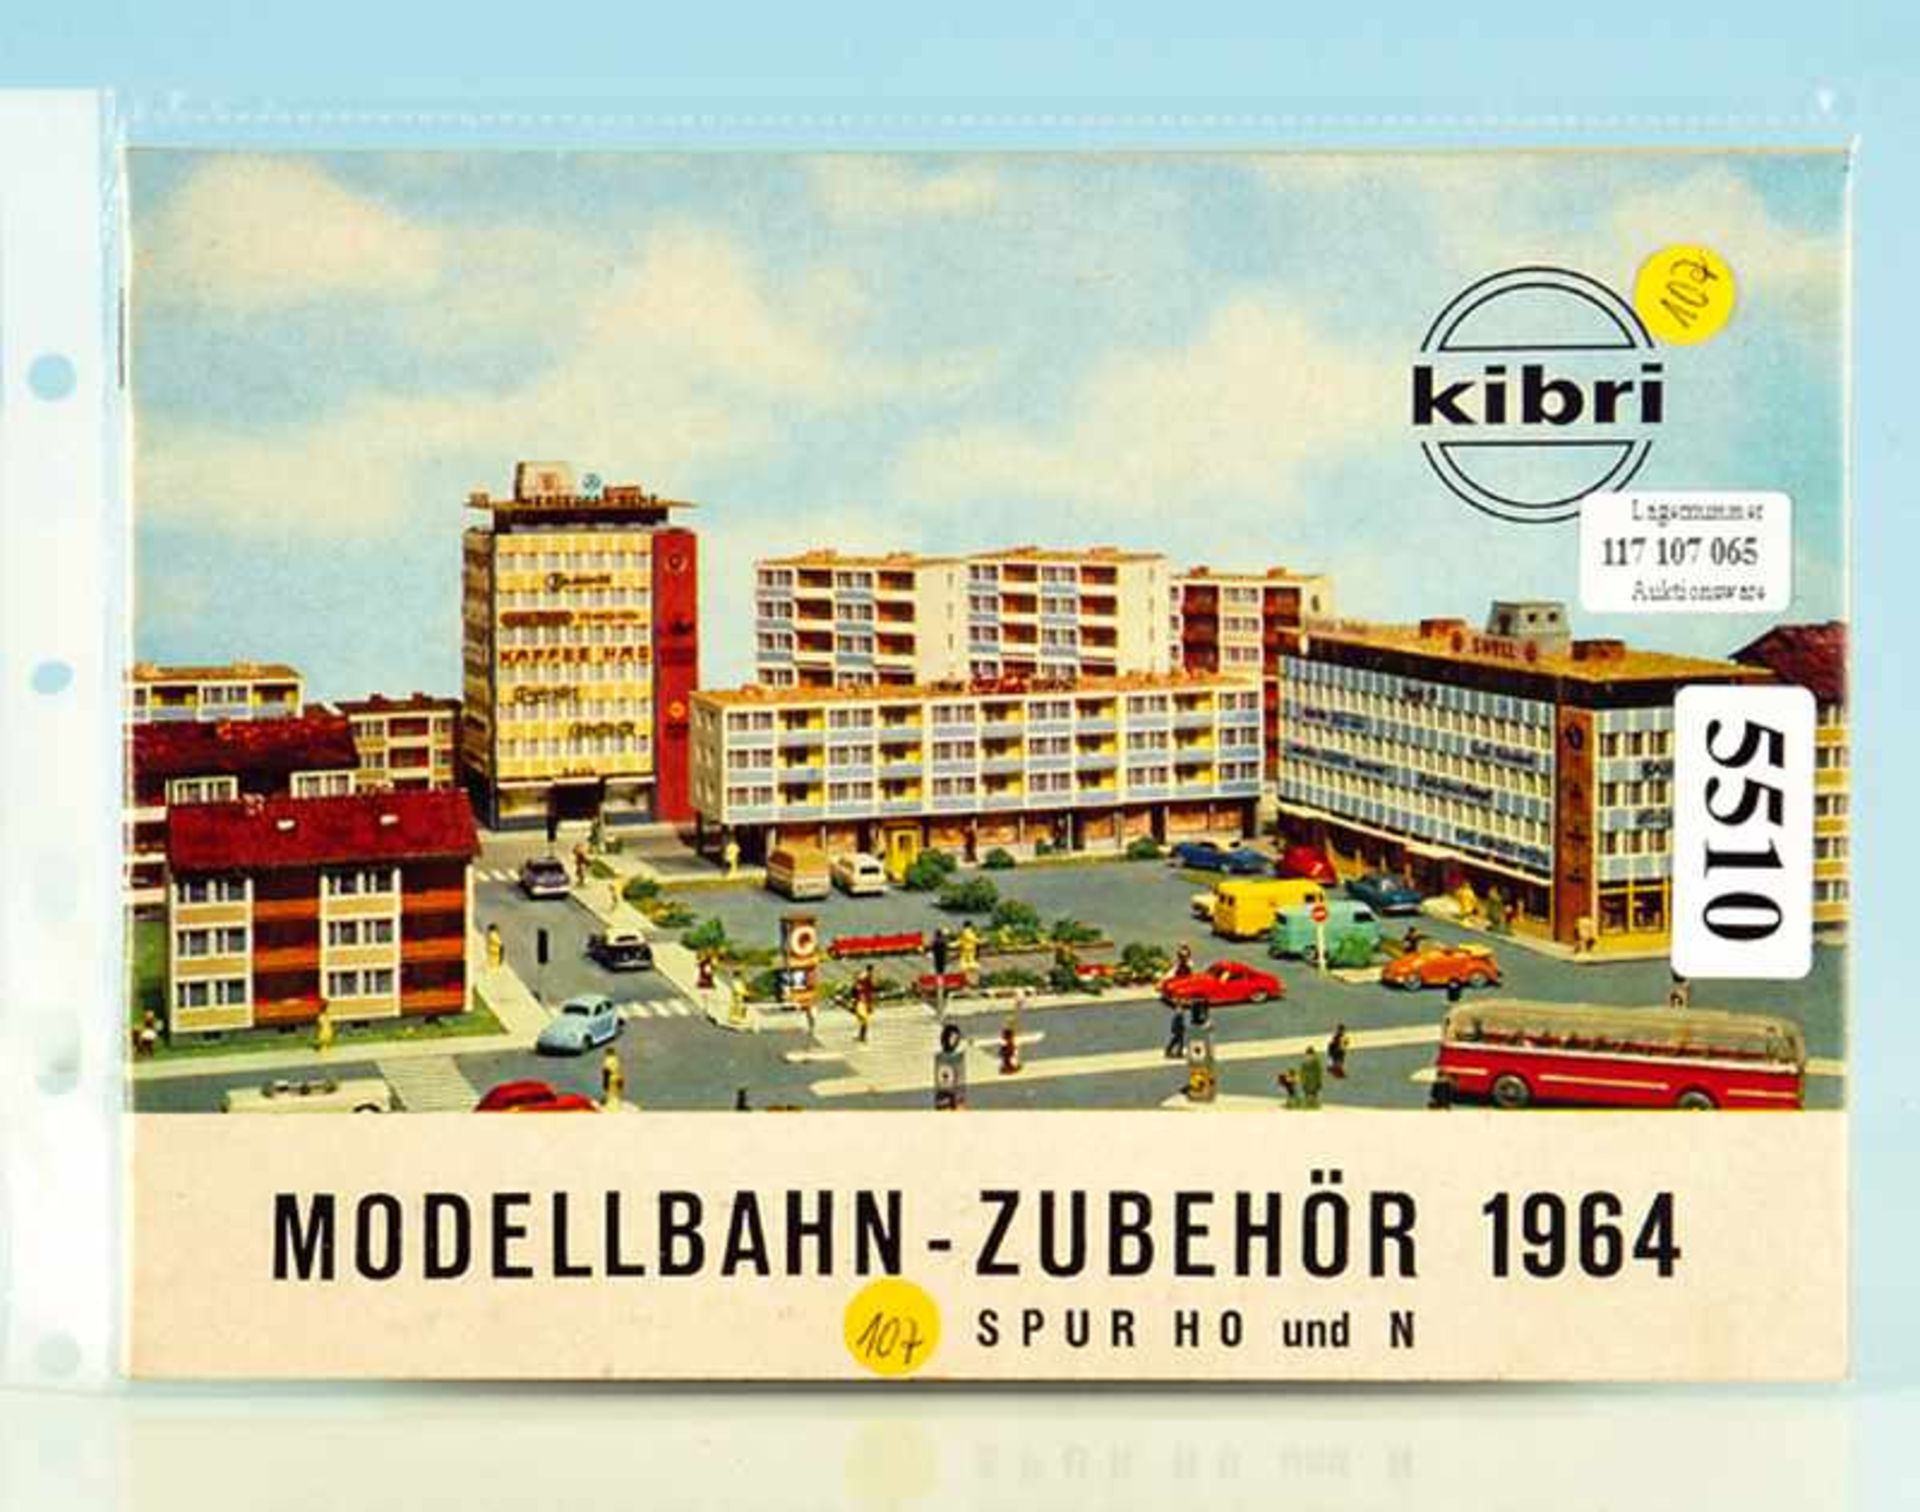 KIBRI Zubehörkatalog 1964 guter Zustand.